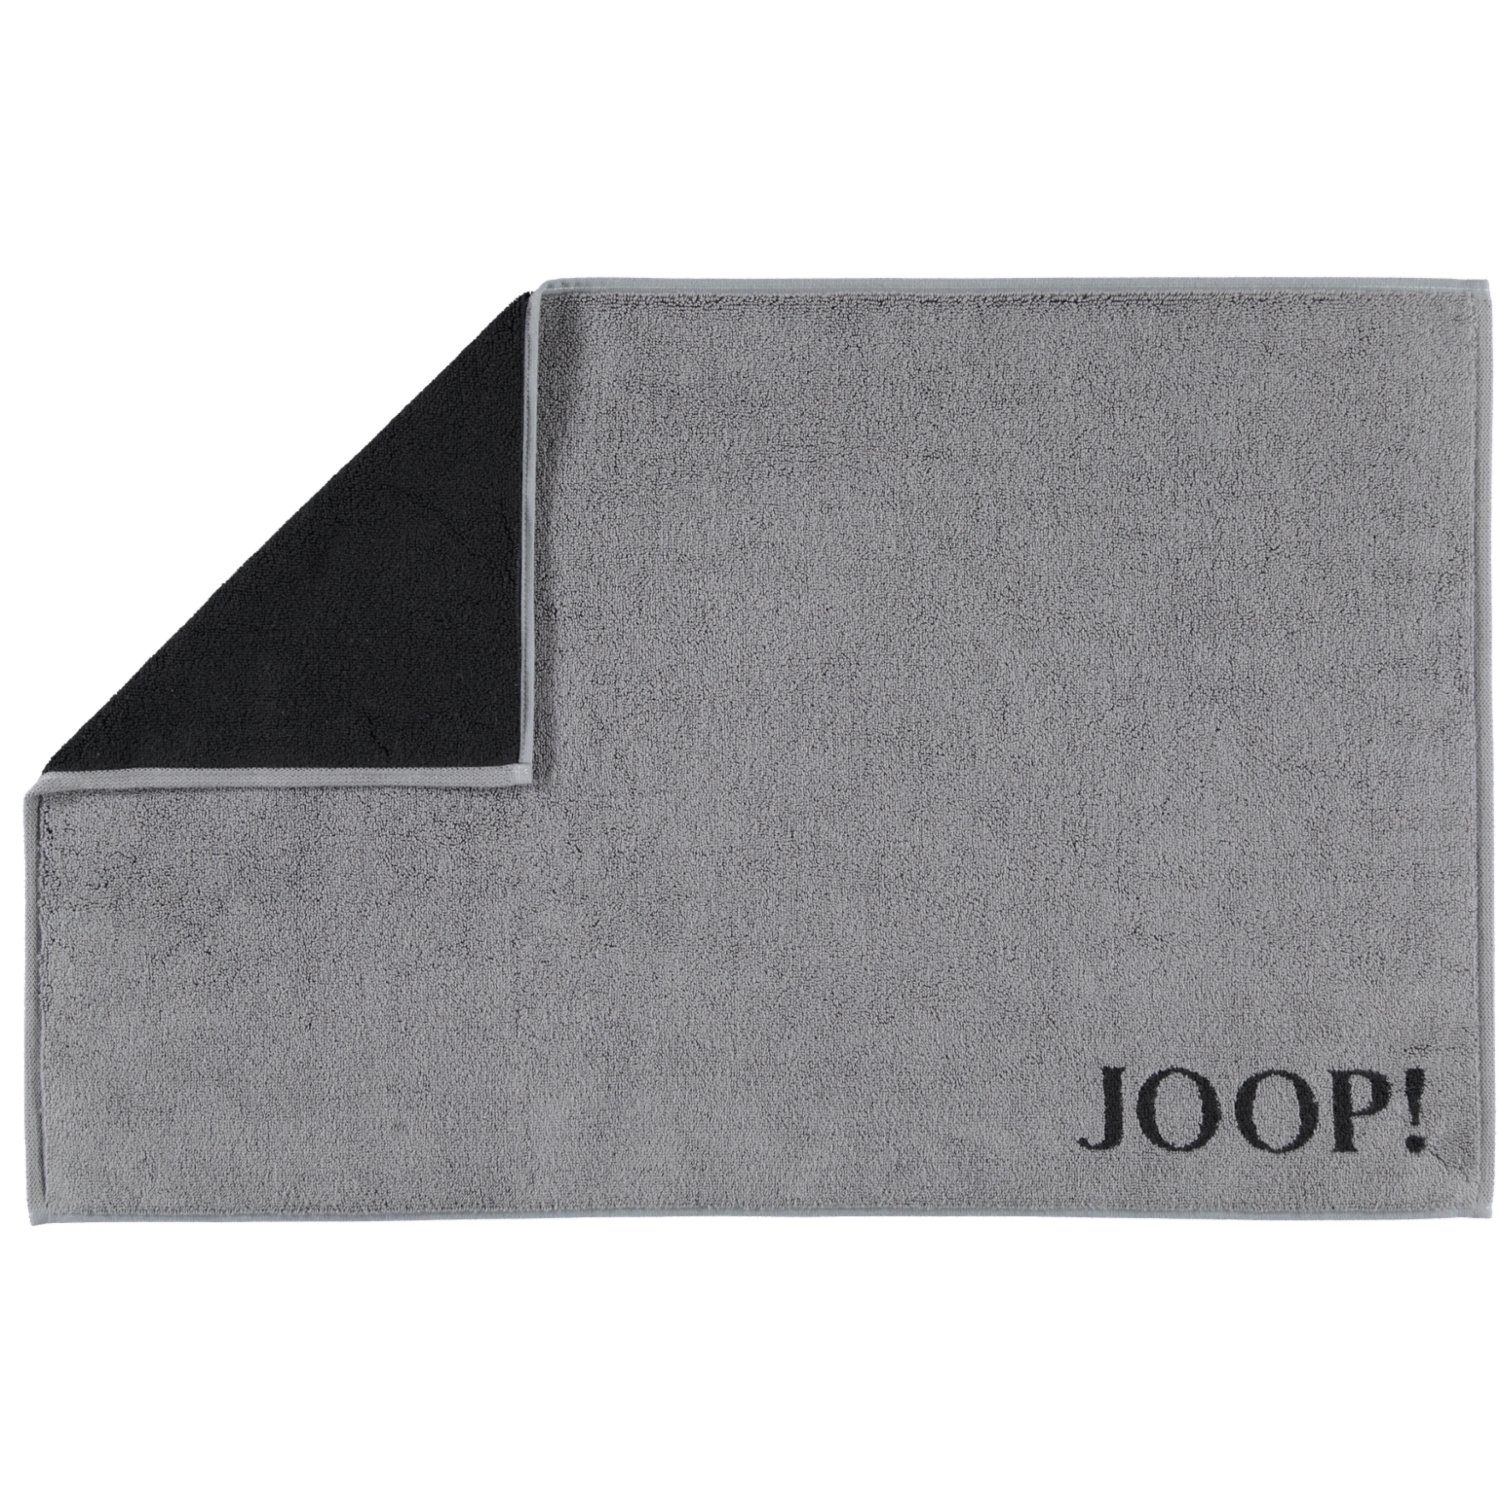 Classic Joop!, Duschmatte Doubleface 100% Grau Baumwolle 1600